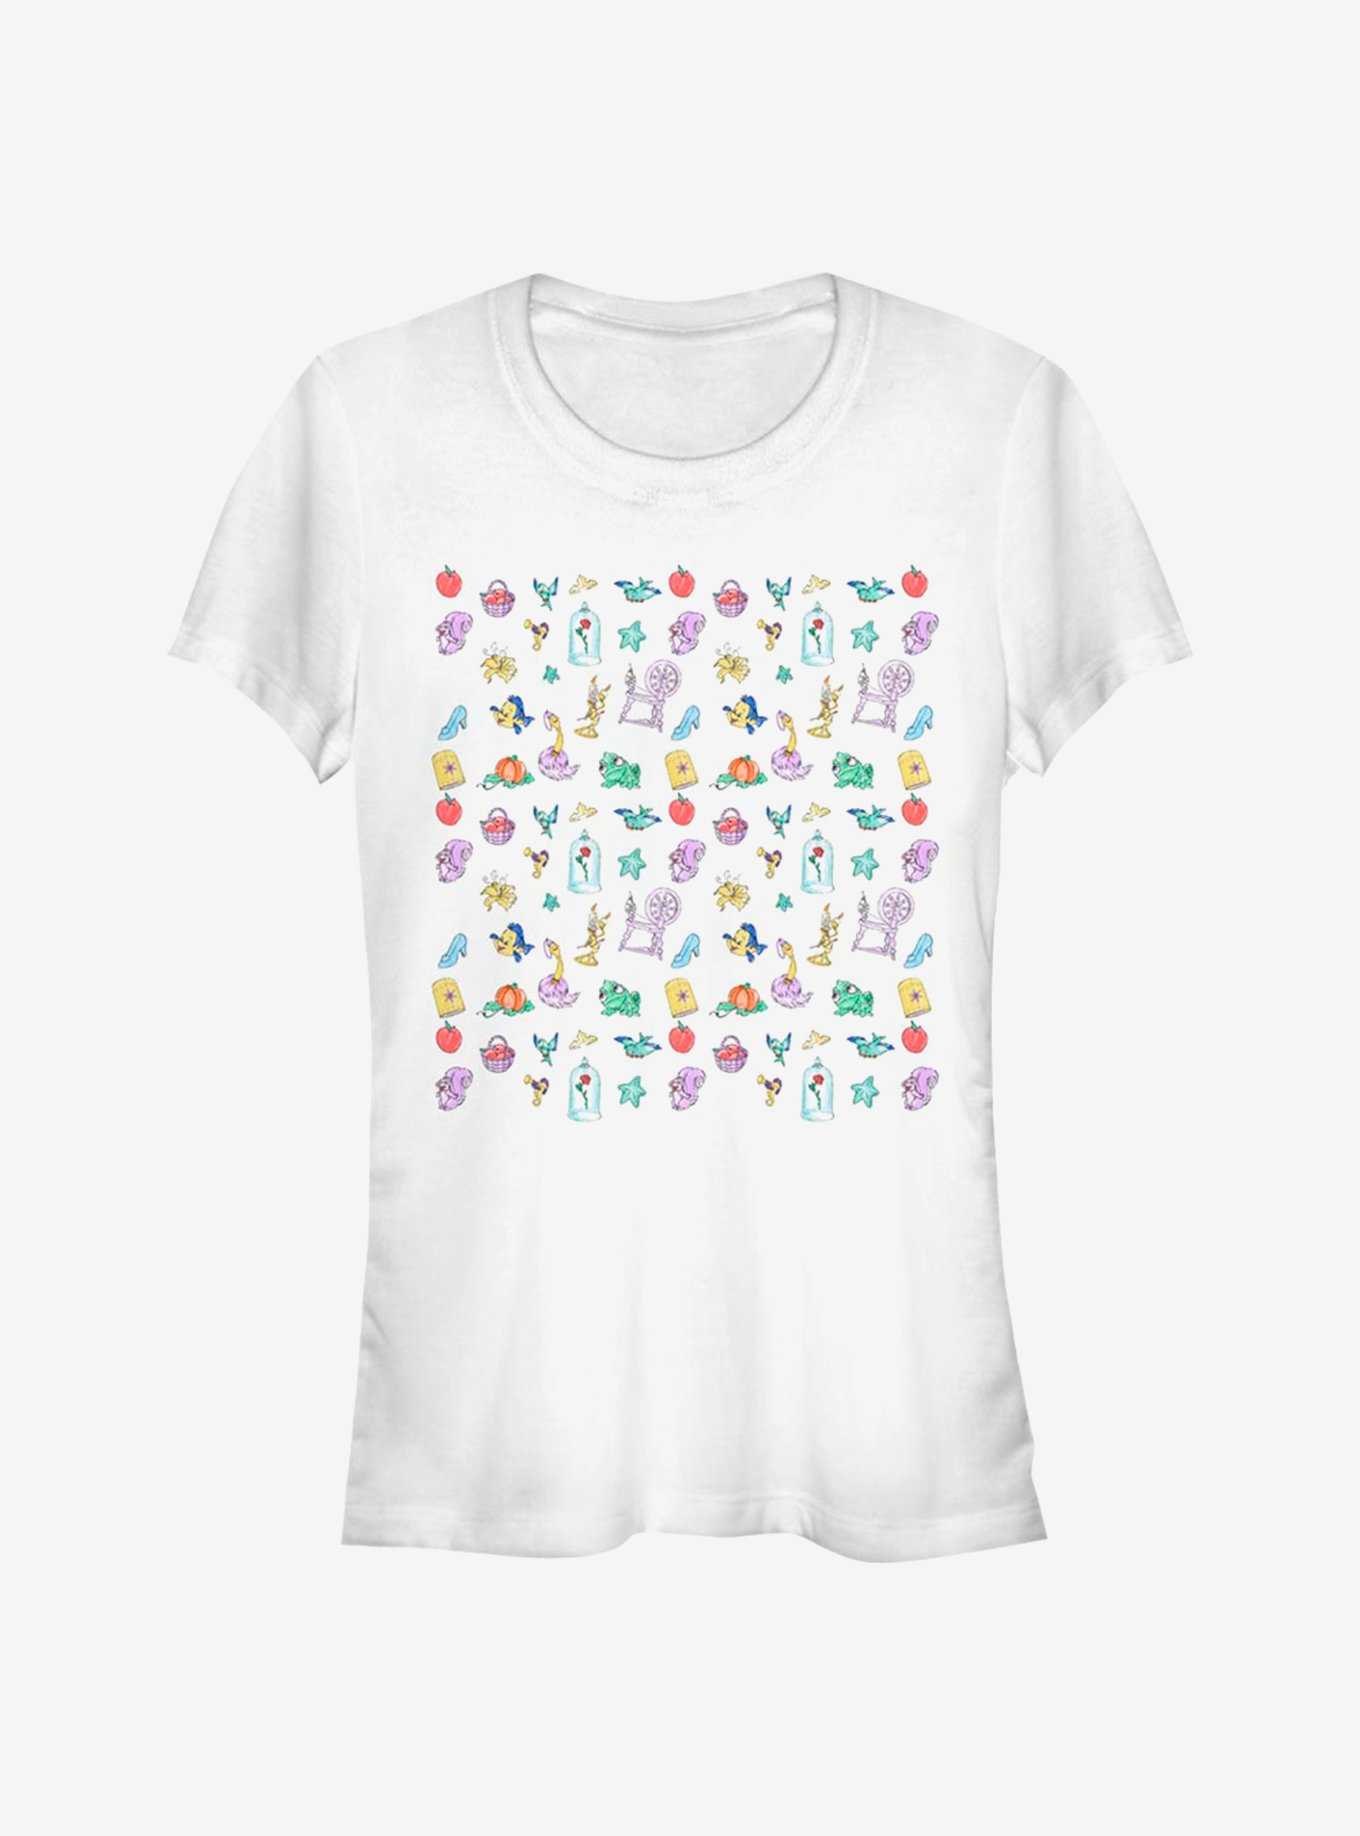 Disney Princess Doodles Girls T-Shirt, , hi-res